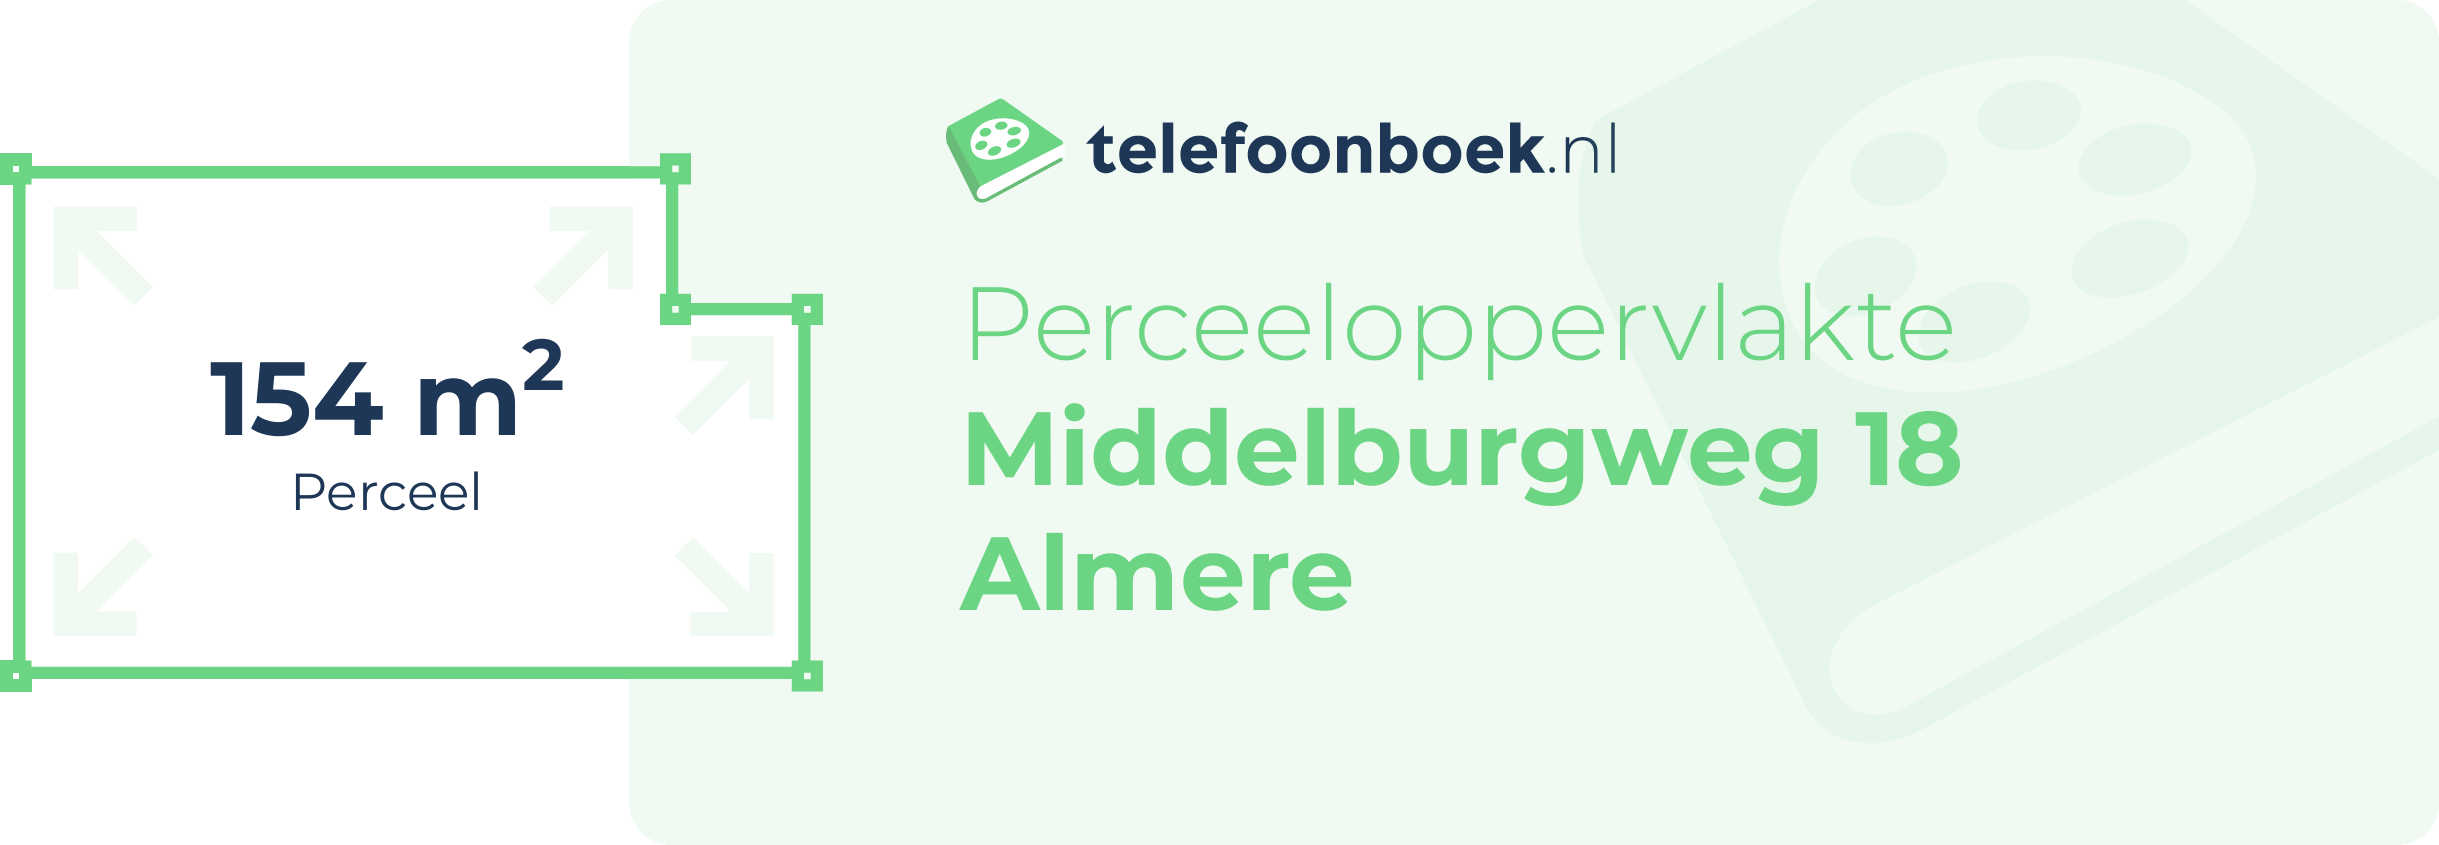 Perceeloppervlakte Middelburgweg 18 Almere